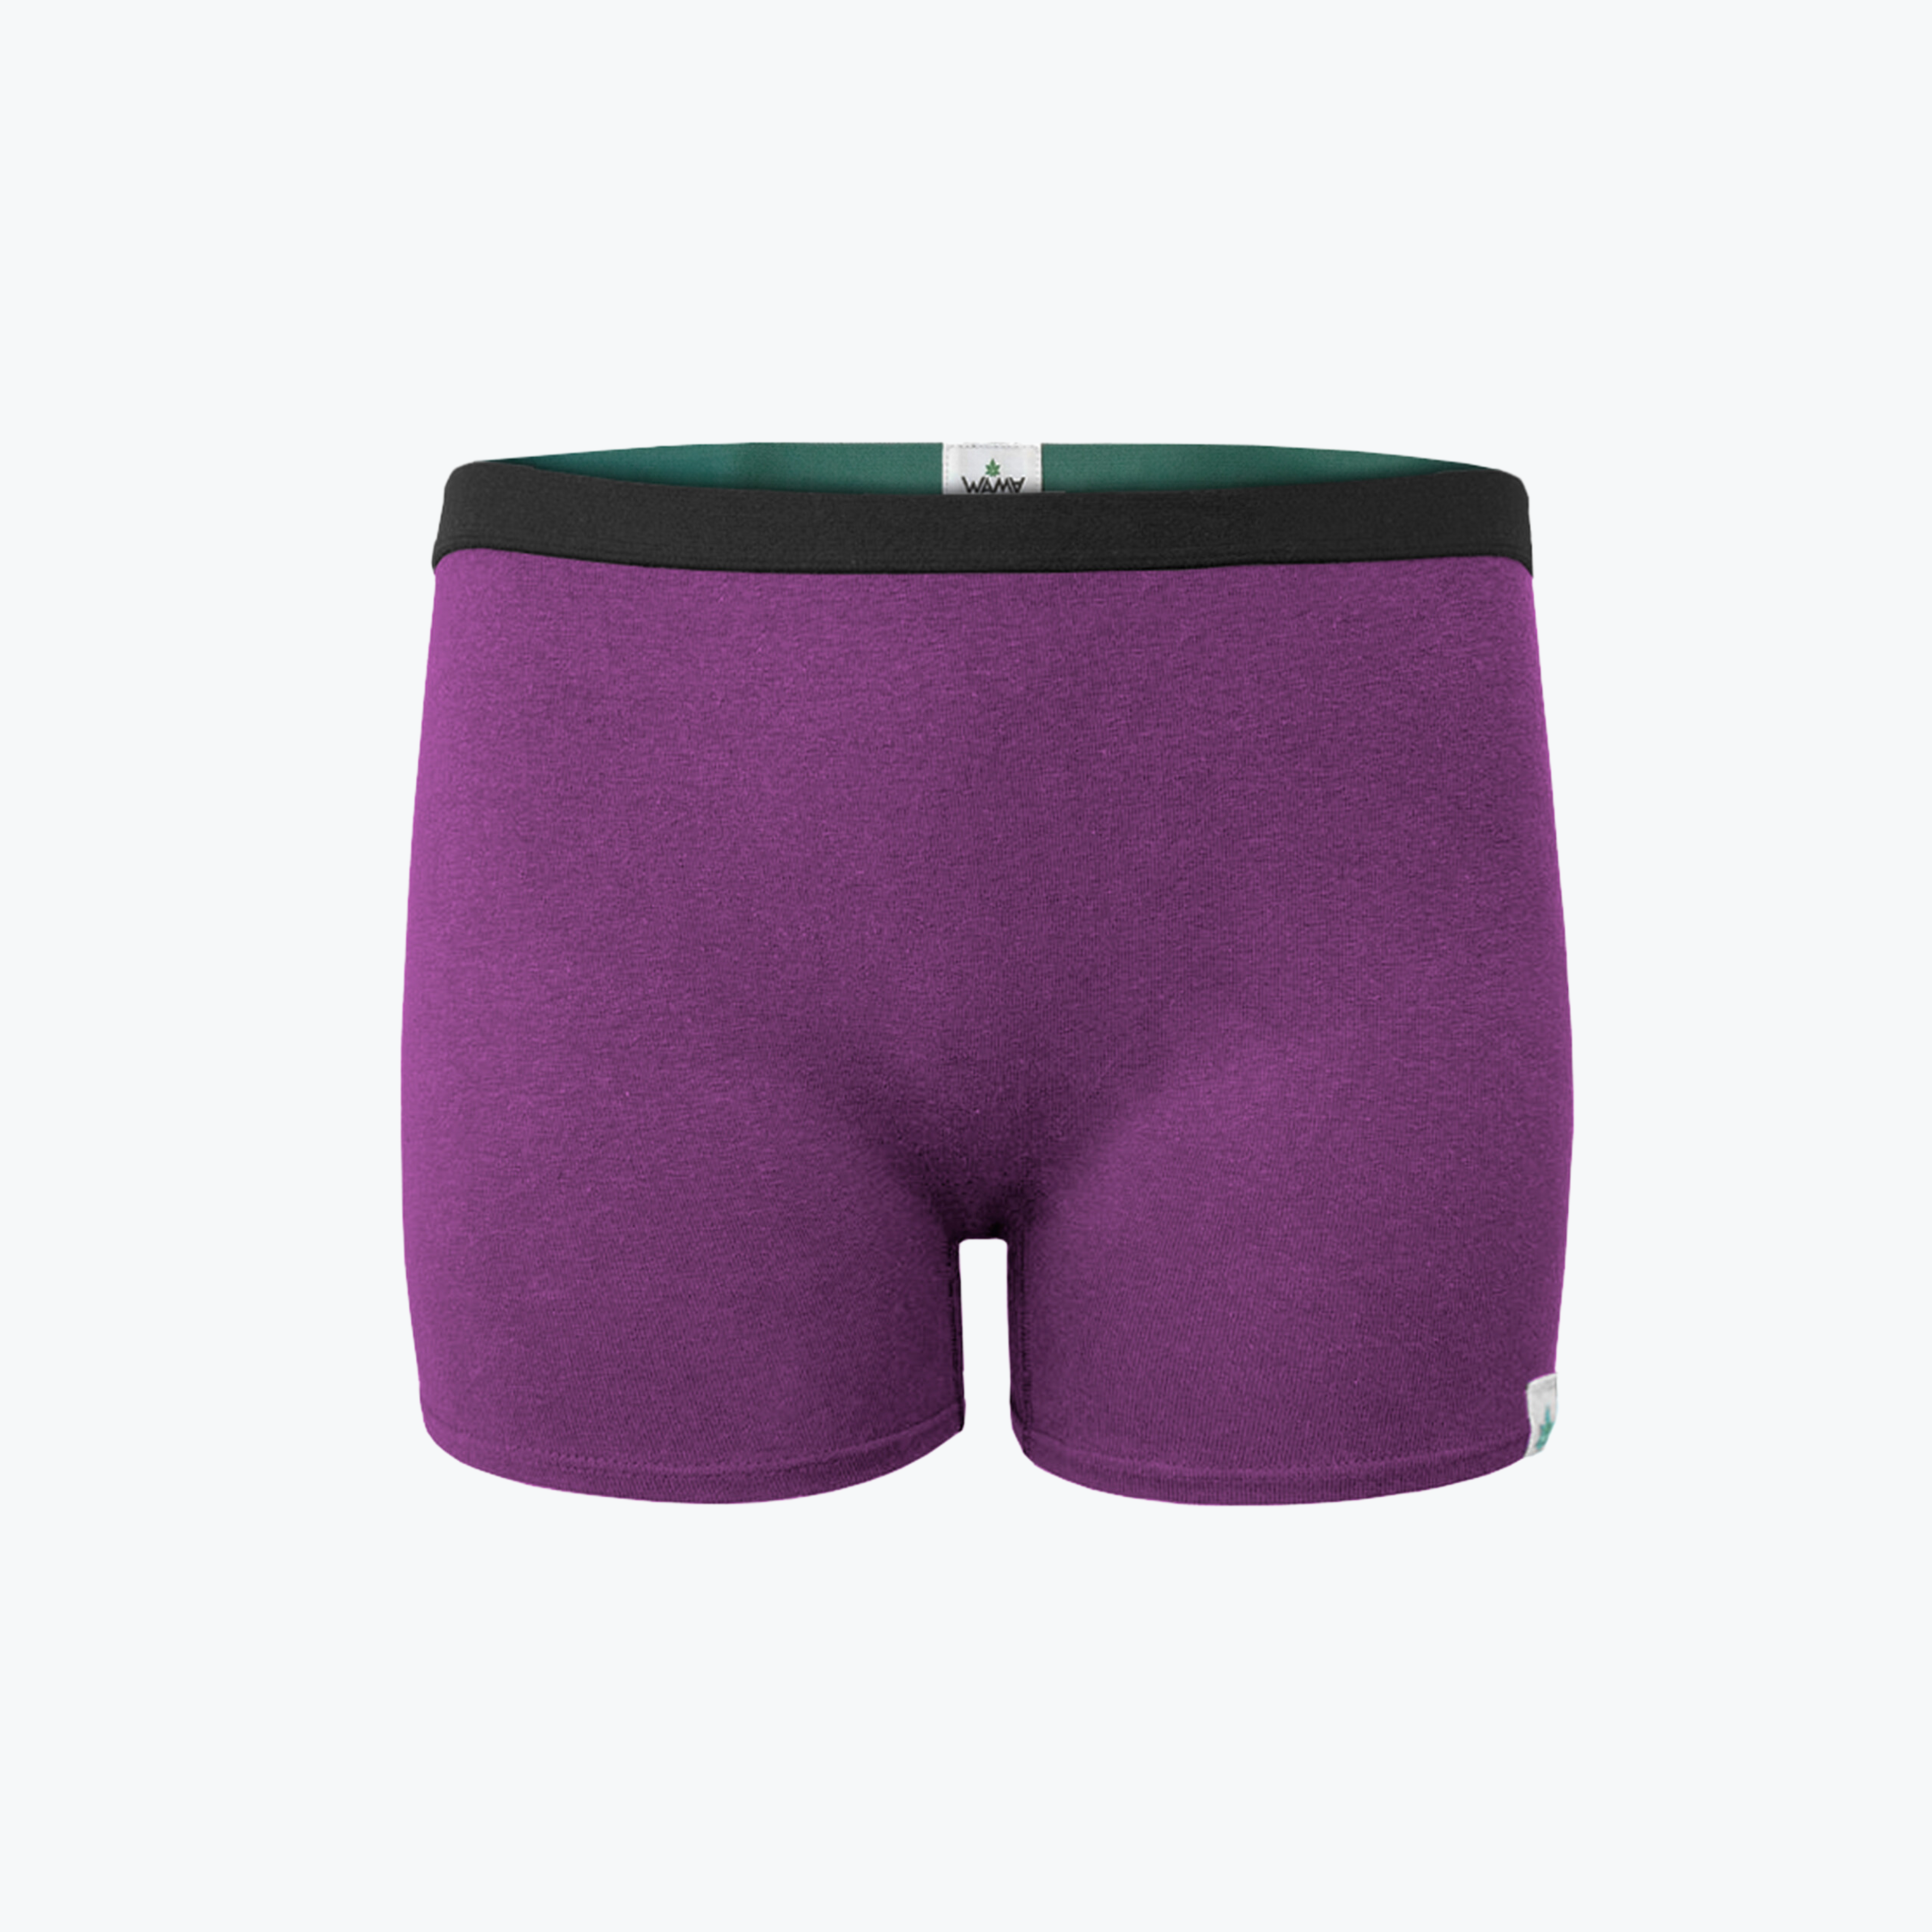 Buy SHINEMART Women's Boyshort Underwear Cotton Bloomer Briefs